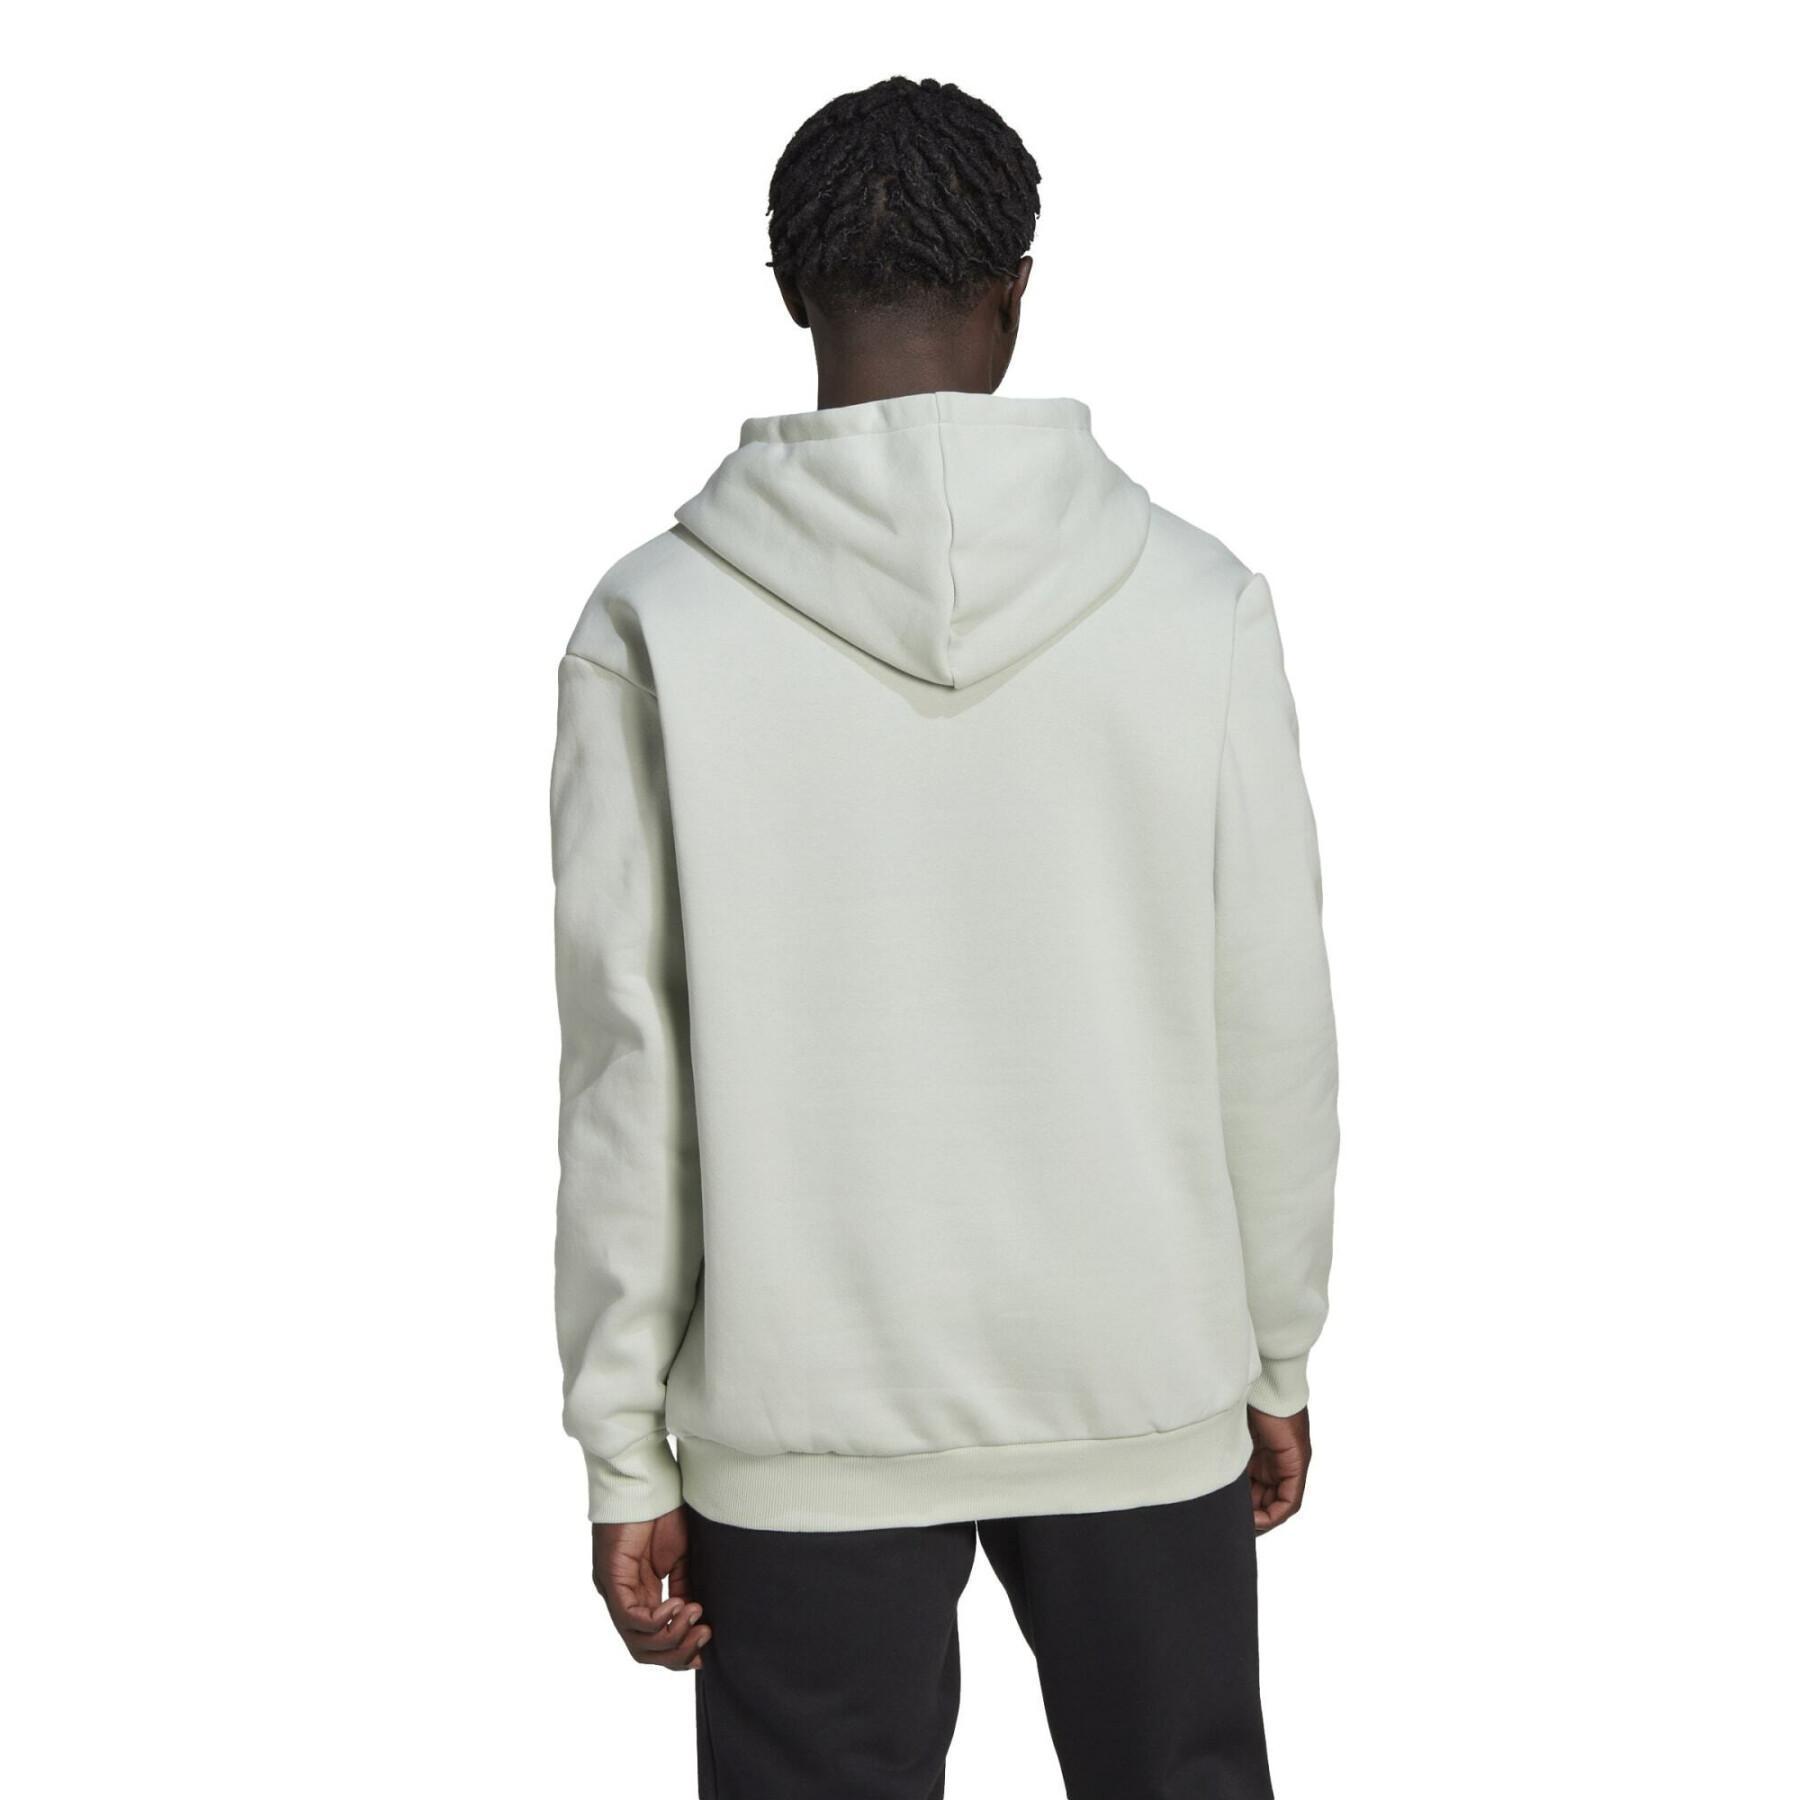 Fleece sweatshirt met logo adidas Essentials Giant